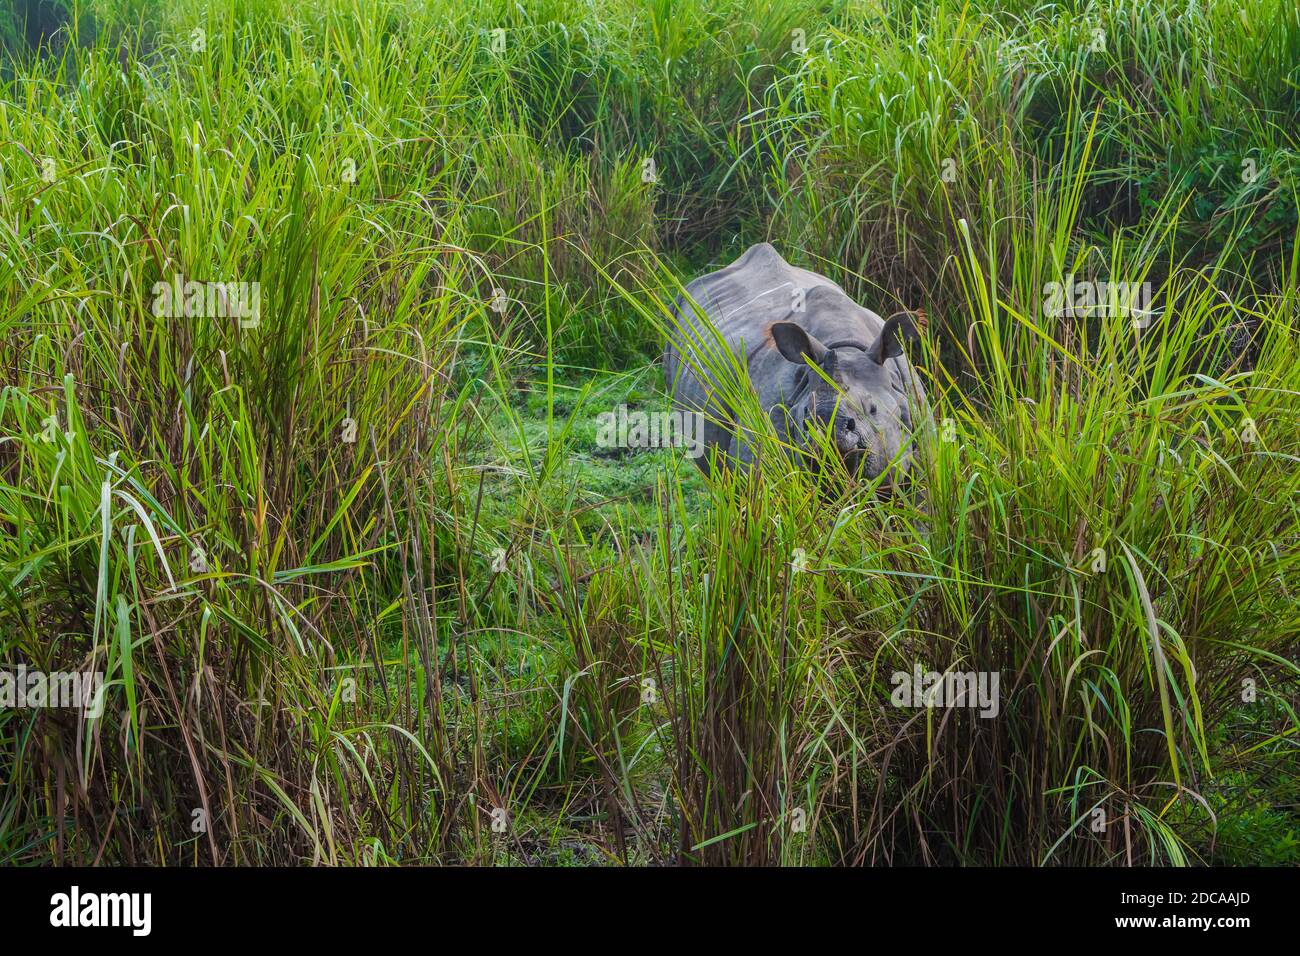 Indian one horned big rhinoceros in Kaziranga National Park - Assam, India Stock Photo